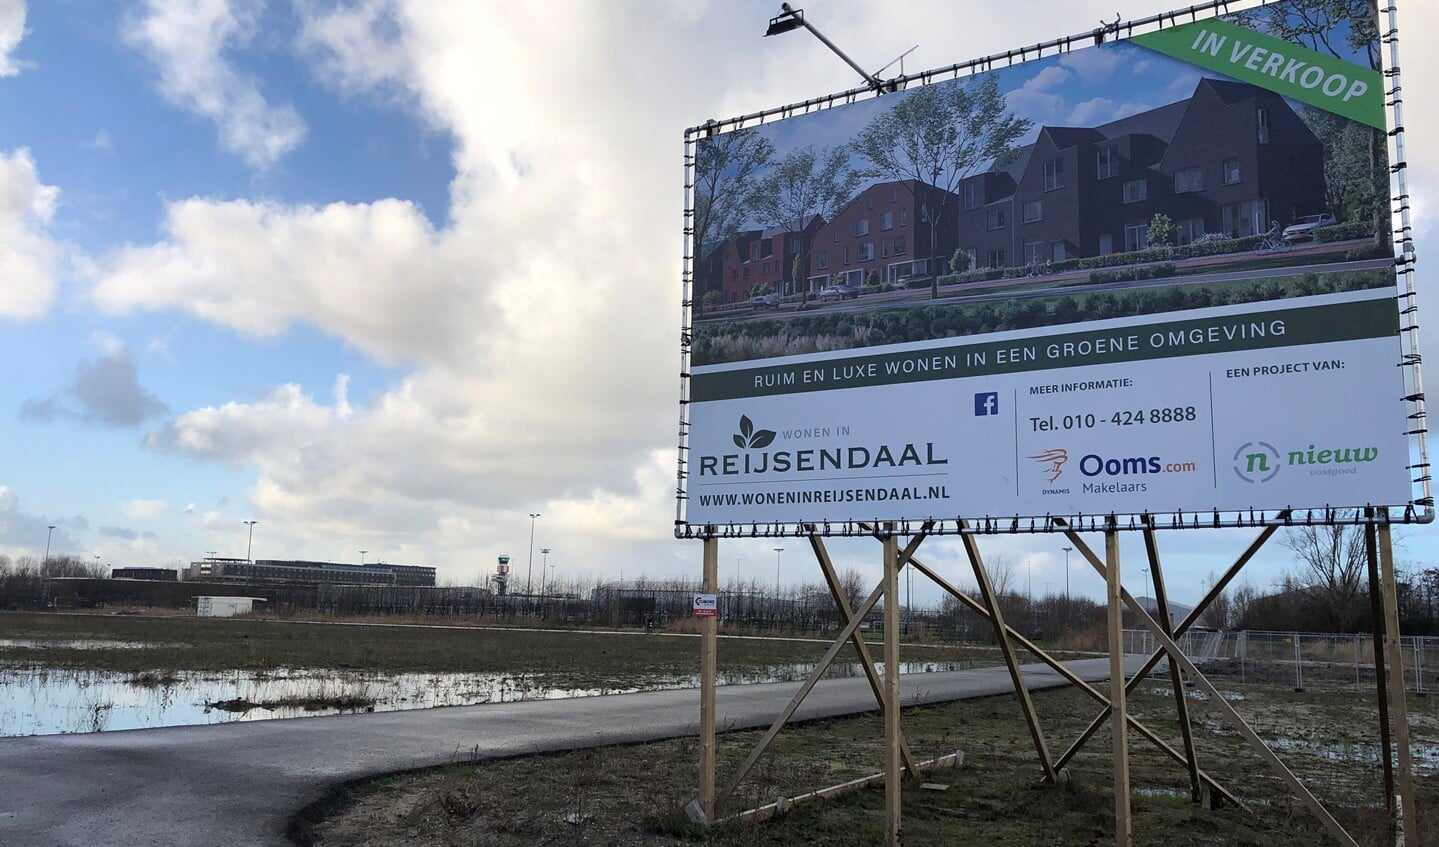 De nieuwe locatie Reijsendaal in de wijk Park16Hoven, net in Overschie en vlakbij Schiebroek. Foto's: Peter Zoetmulder